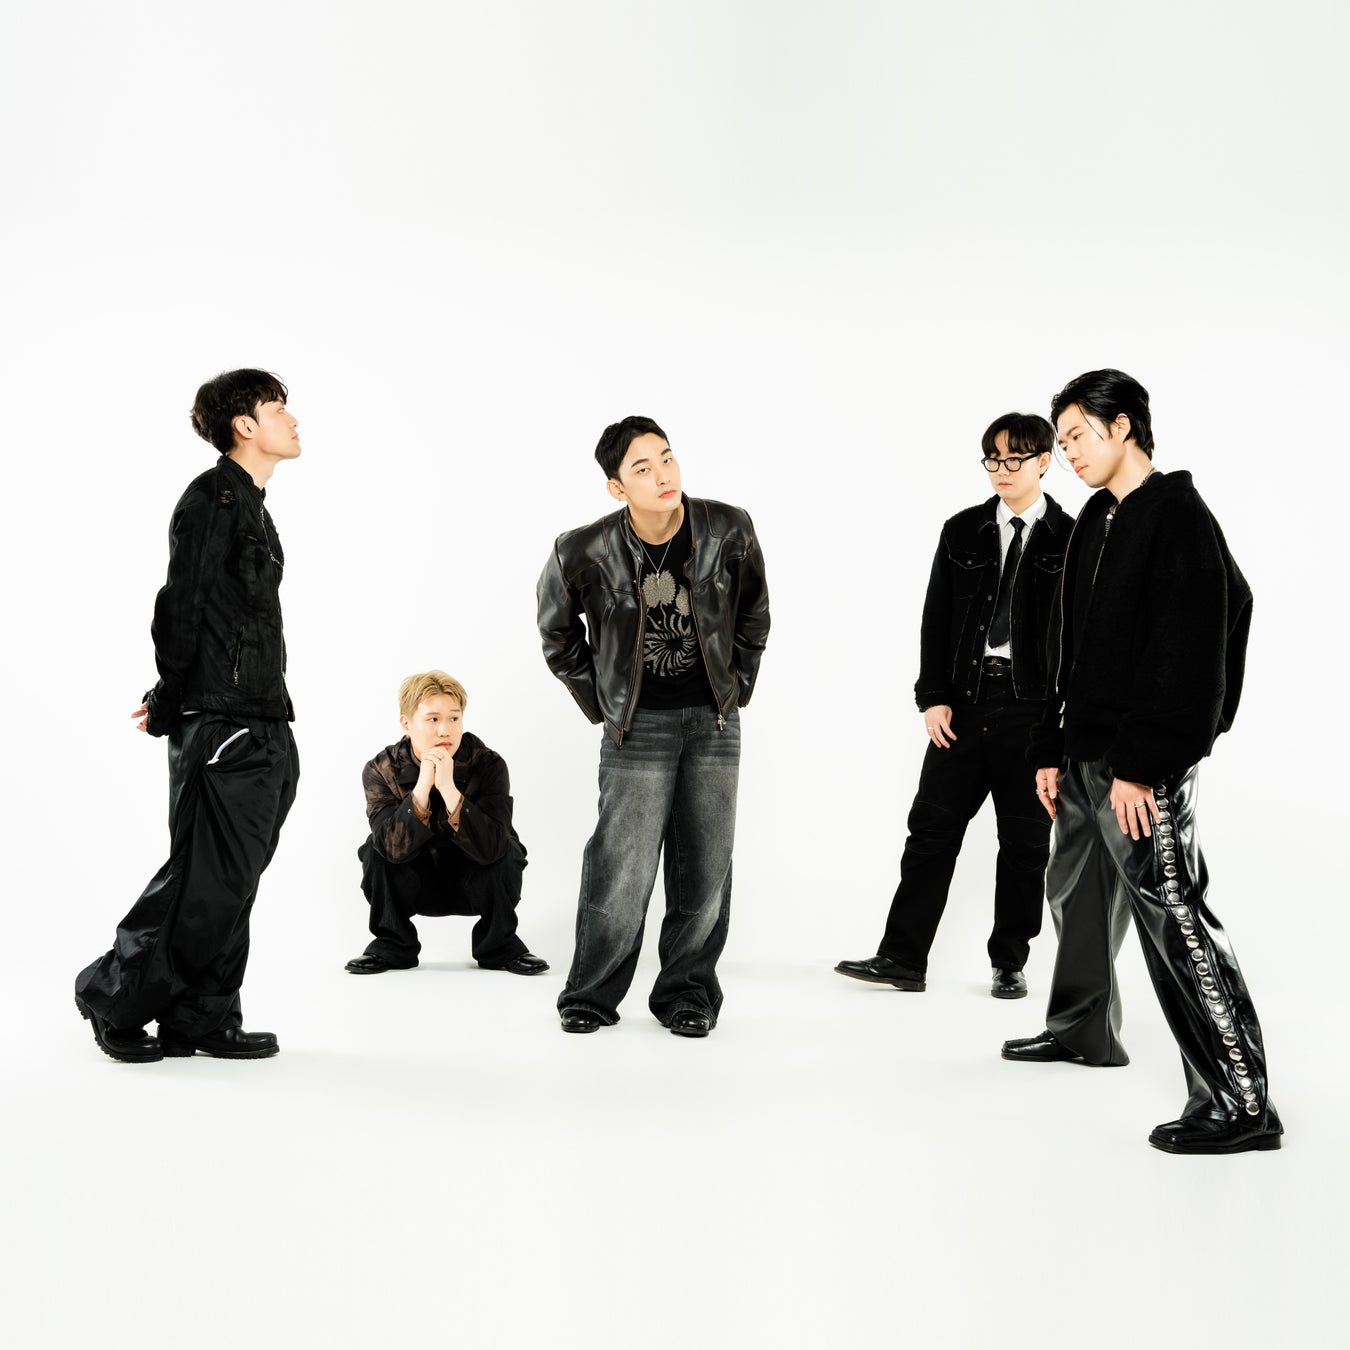 韓国インディーズバンド「JKC(ジャッキングコング)」が4年振りに2ndアルバムとなる「Apophenia」をリリース！